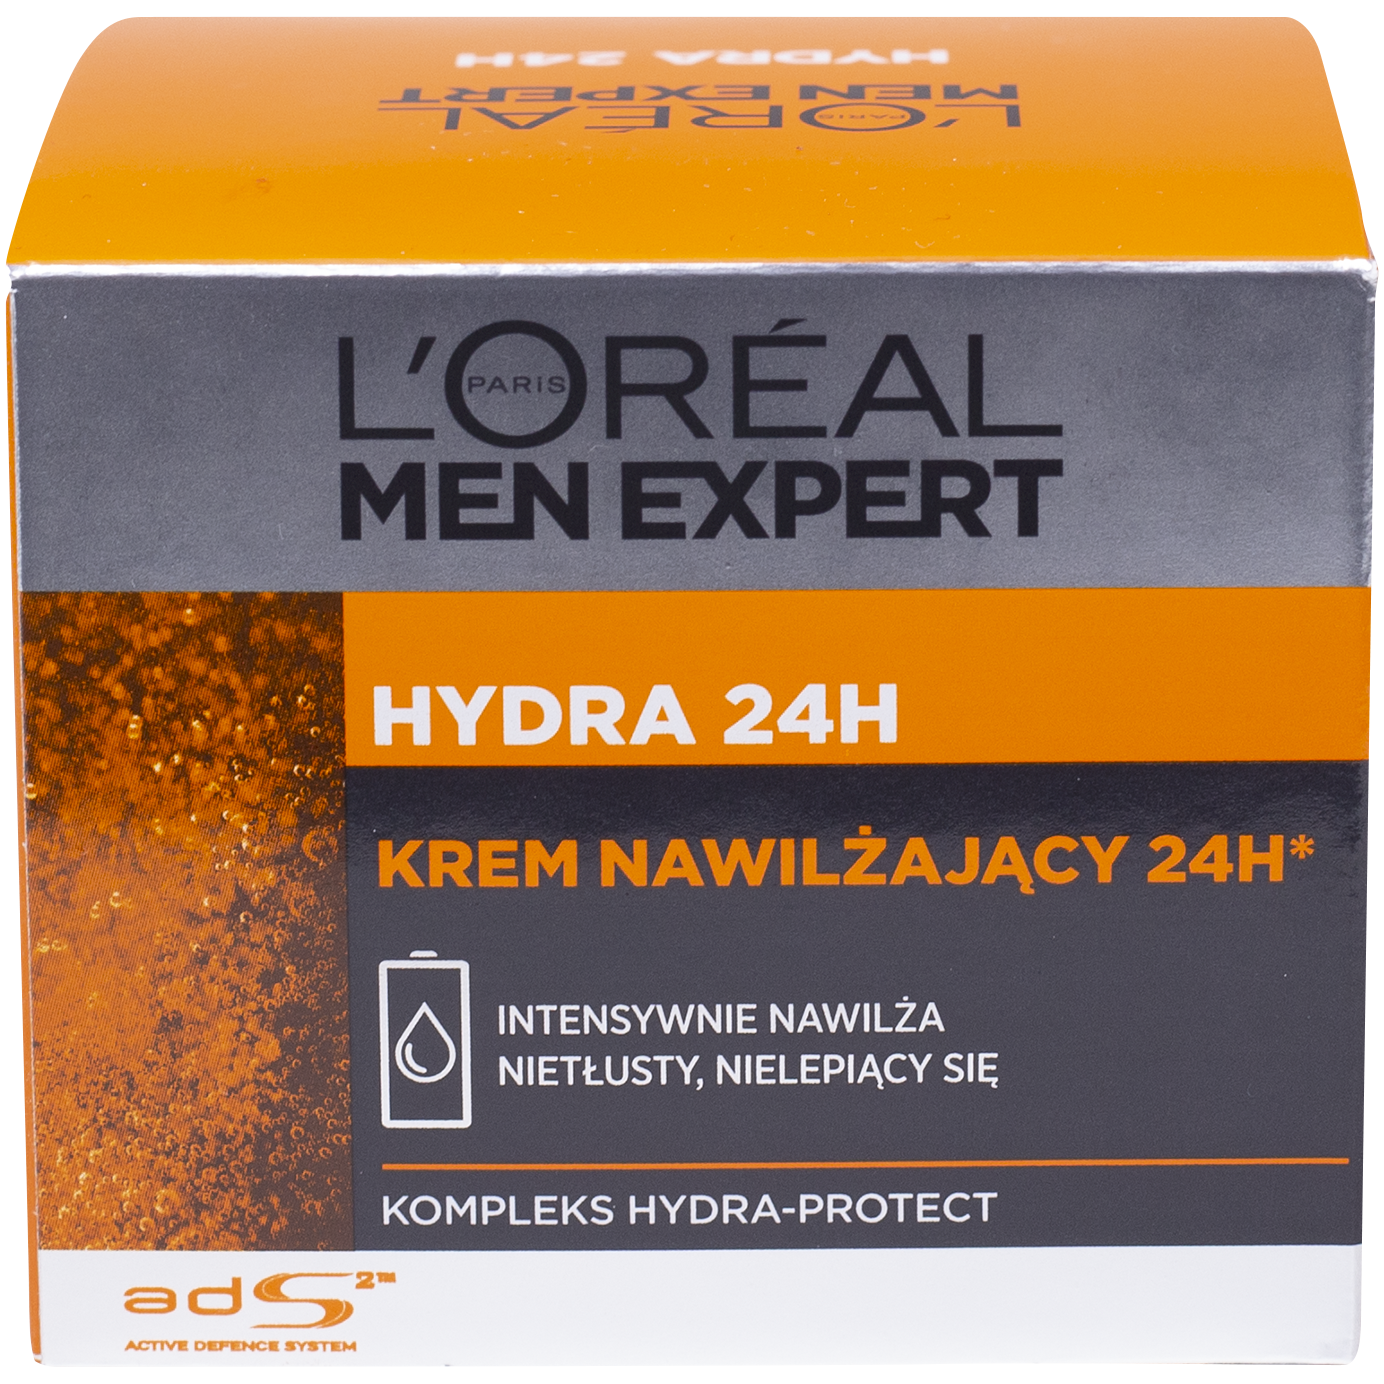 L'Oreal Paris Men Expert intensywnie nawilżający krem do twarzy 50ml Hydra  24H | hebe.pl